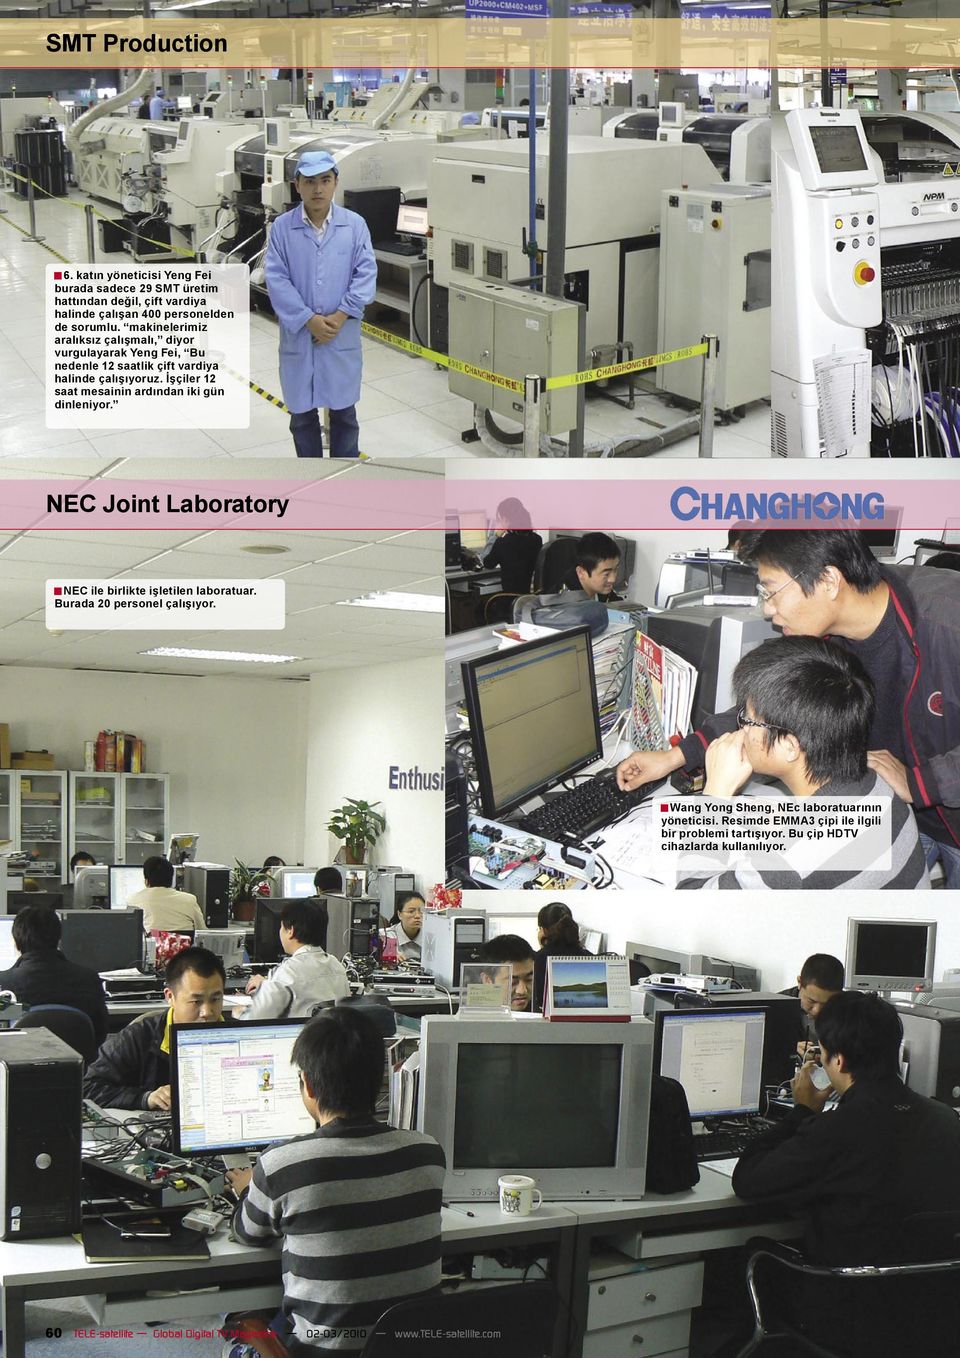 İşçiler 12 saat mesainin ardından iki gün dinleniyor. NEC Joint Laboratory NEC ile birlikte işletilen laboratuar. Burada 20 personel çalışıyor.